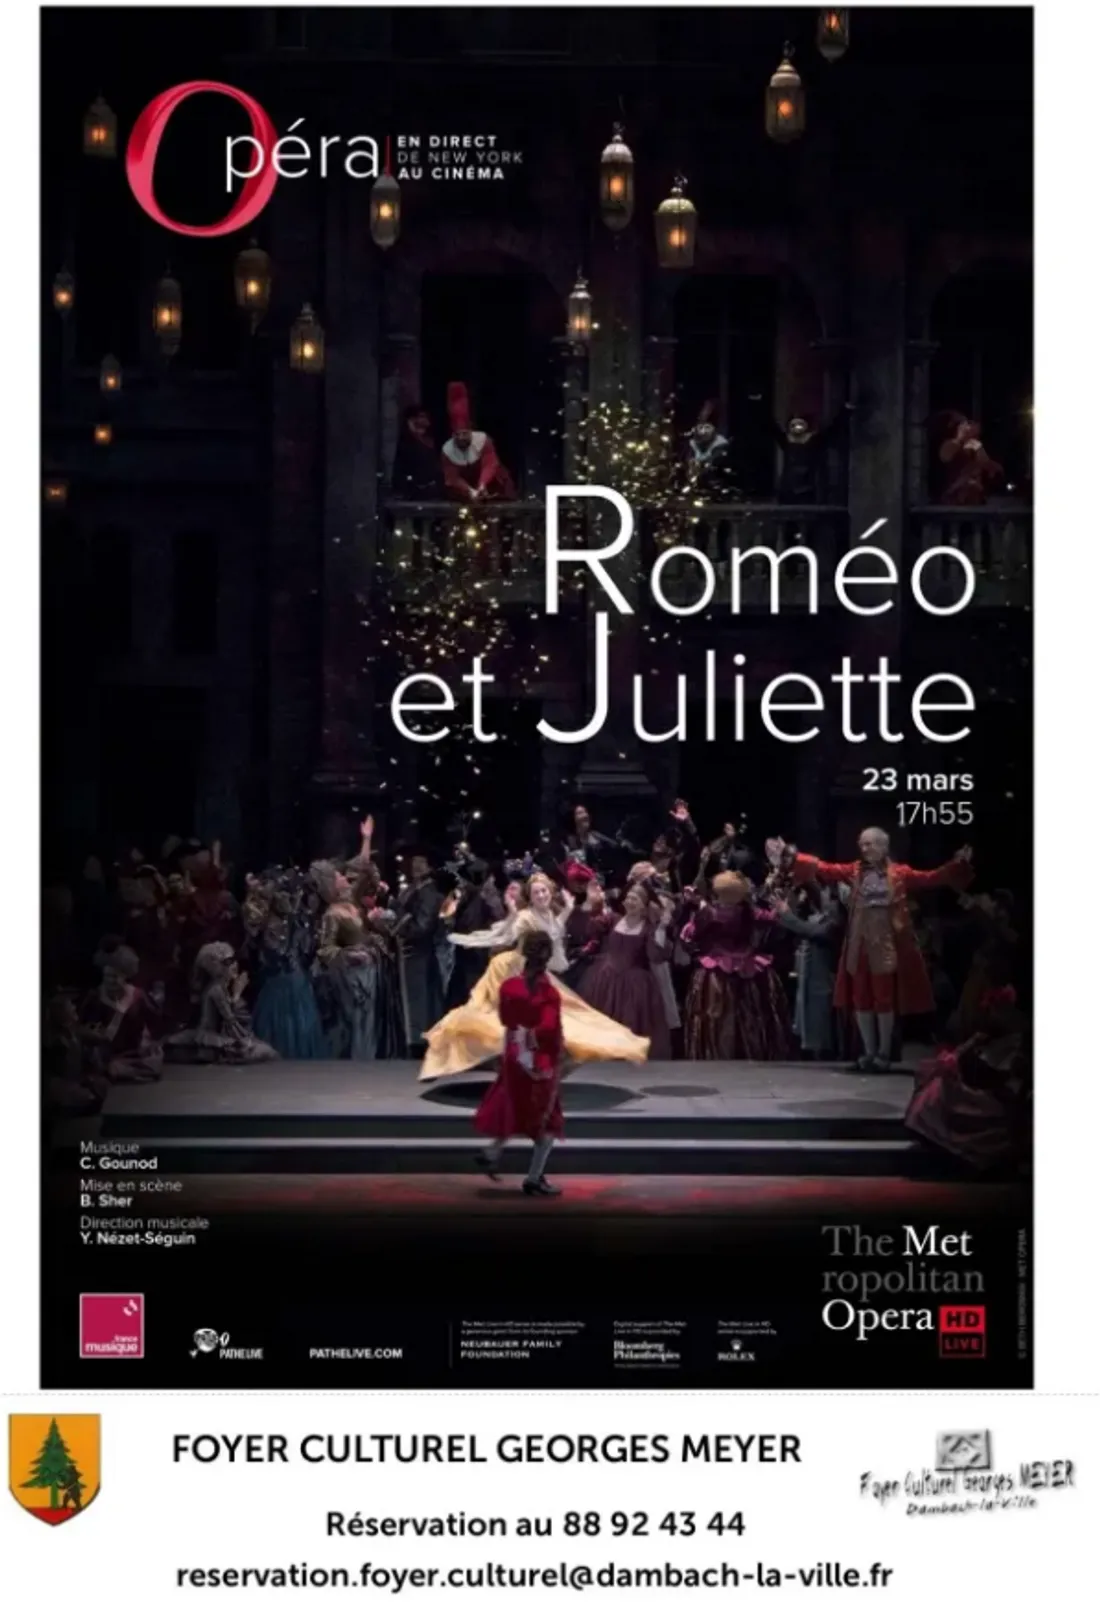 Roméo et Juliette - Opéra retransmission